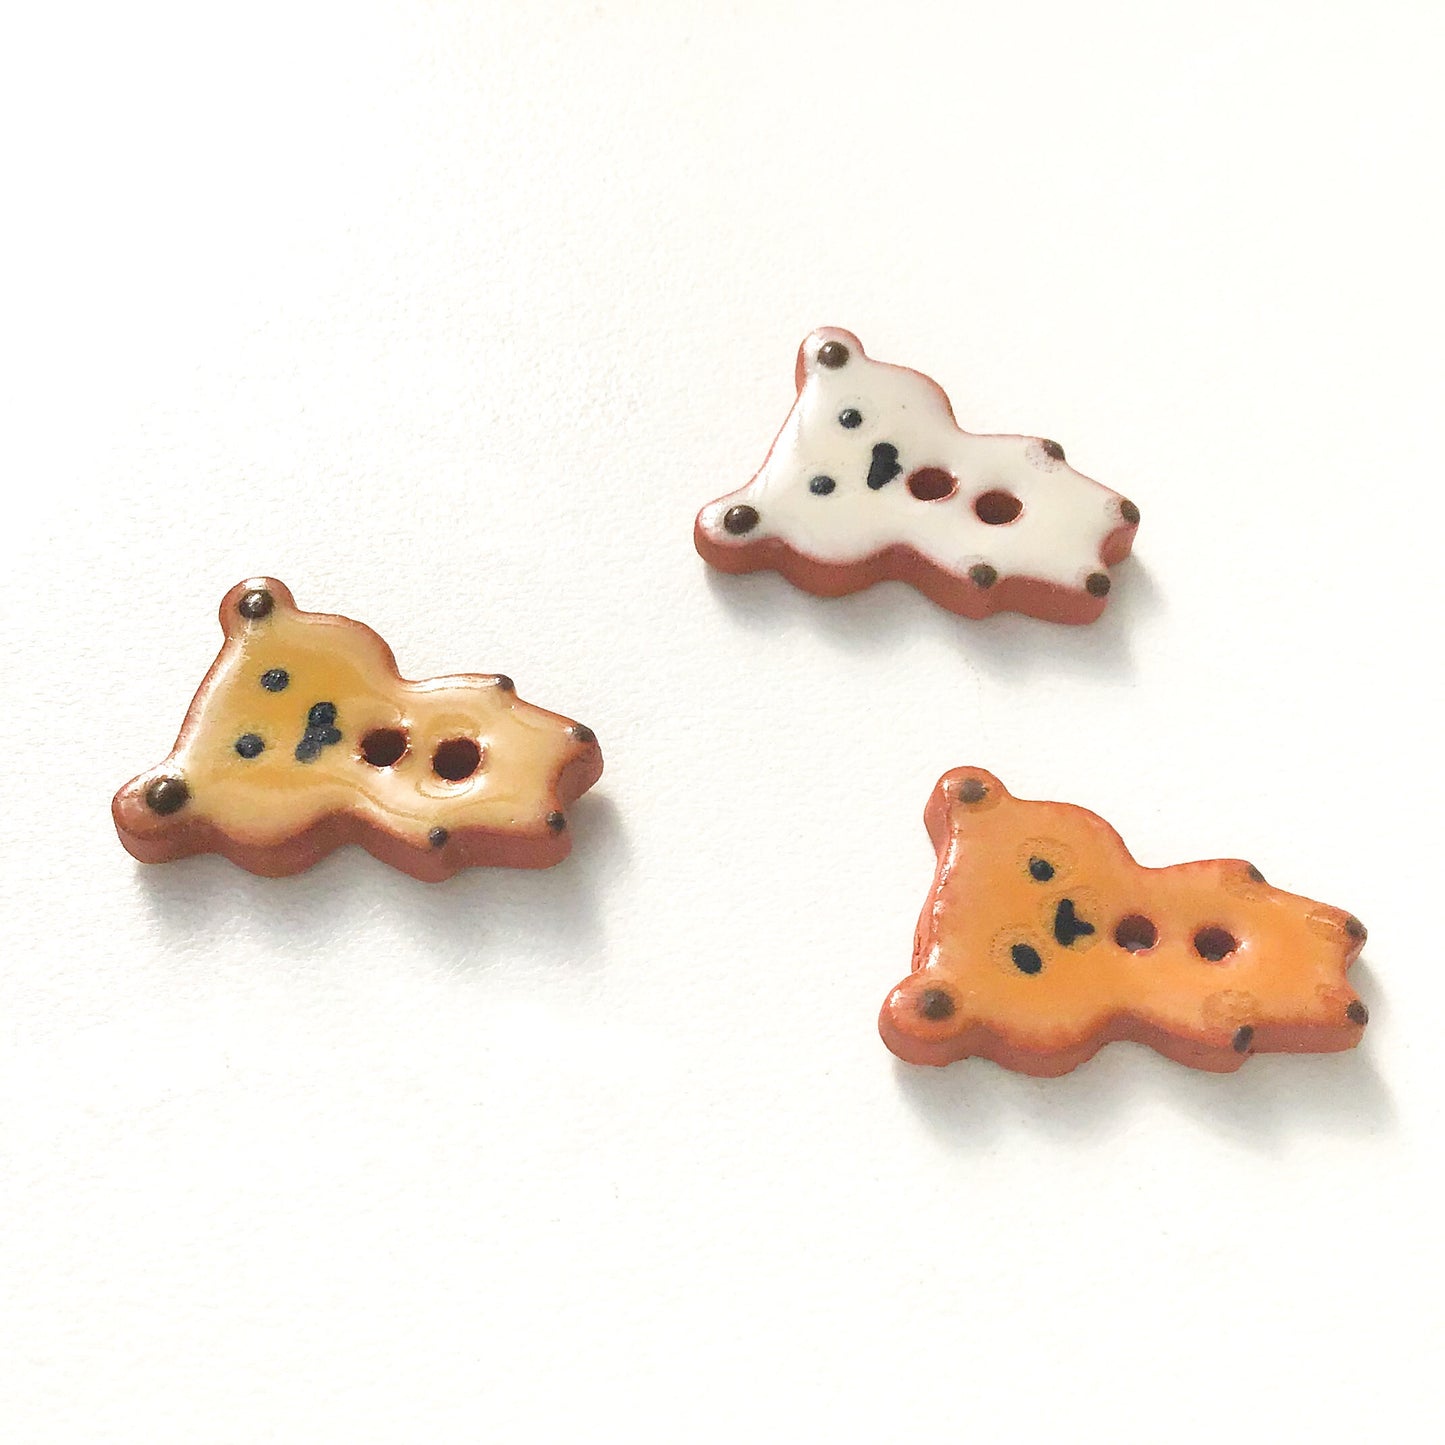 Teddy Bear Buttons - Ceramic Bear Buttons -Children's Animal Buttons (ws-243)